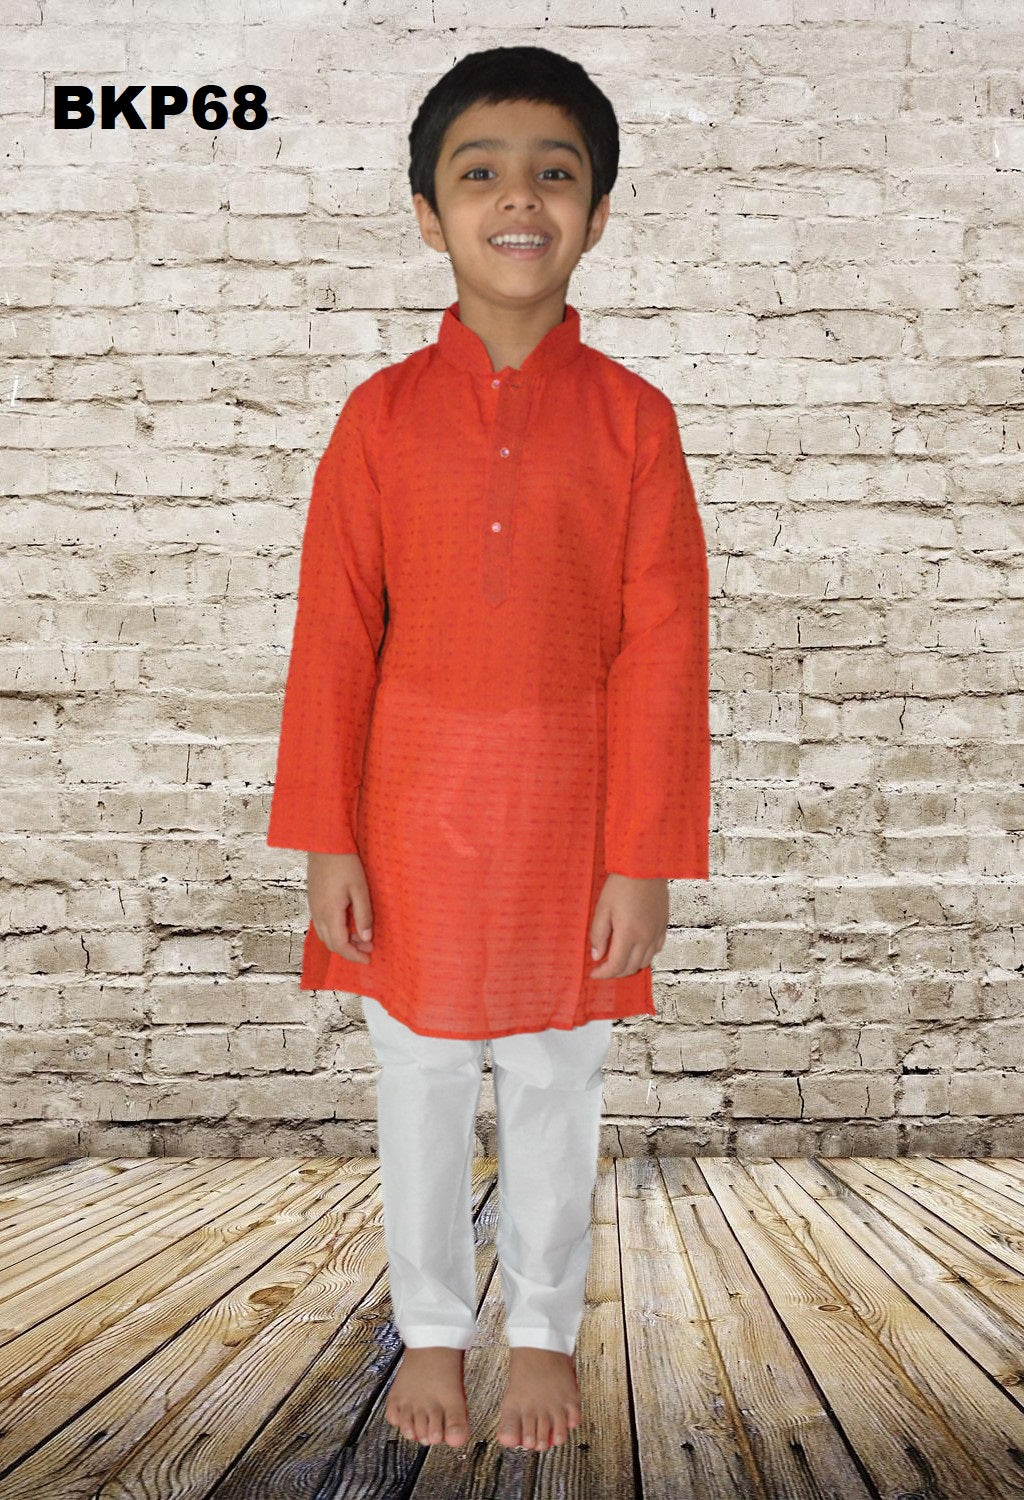 BKP68 - Boys Red cotton Casual wear Kurta Pajama set